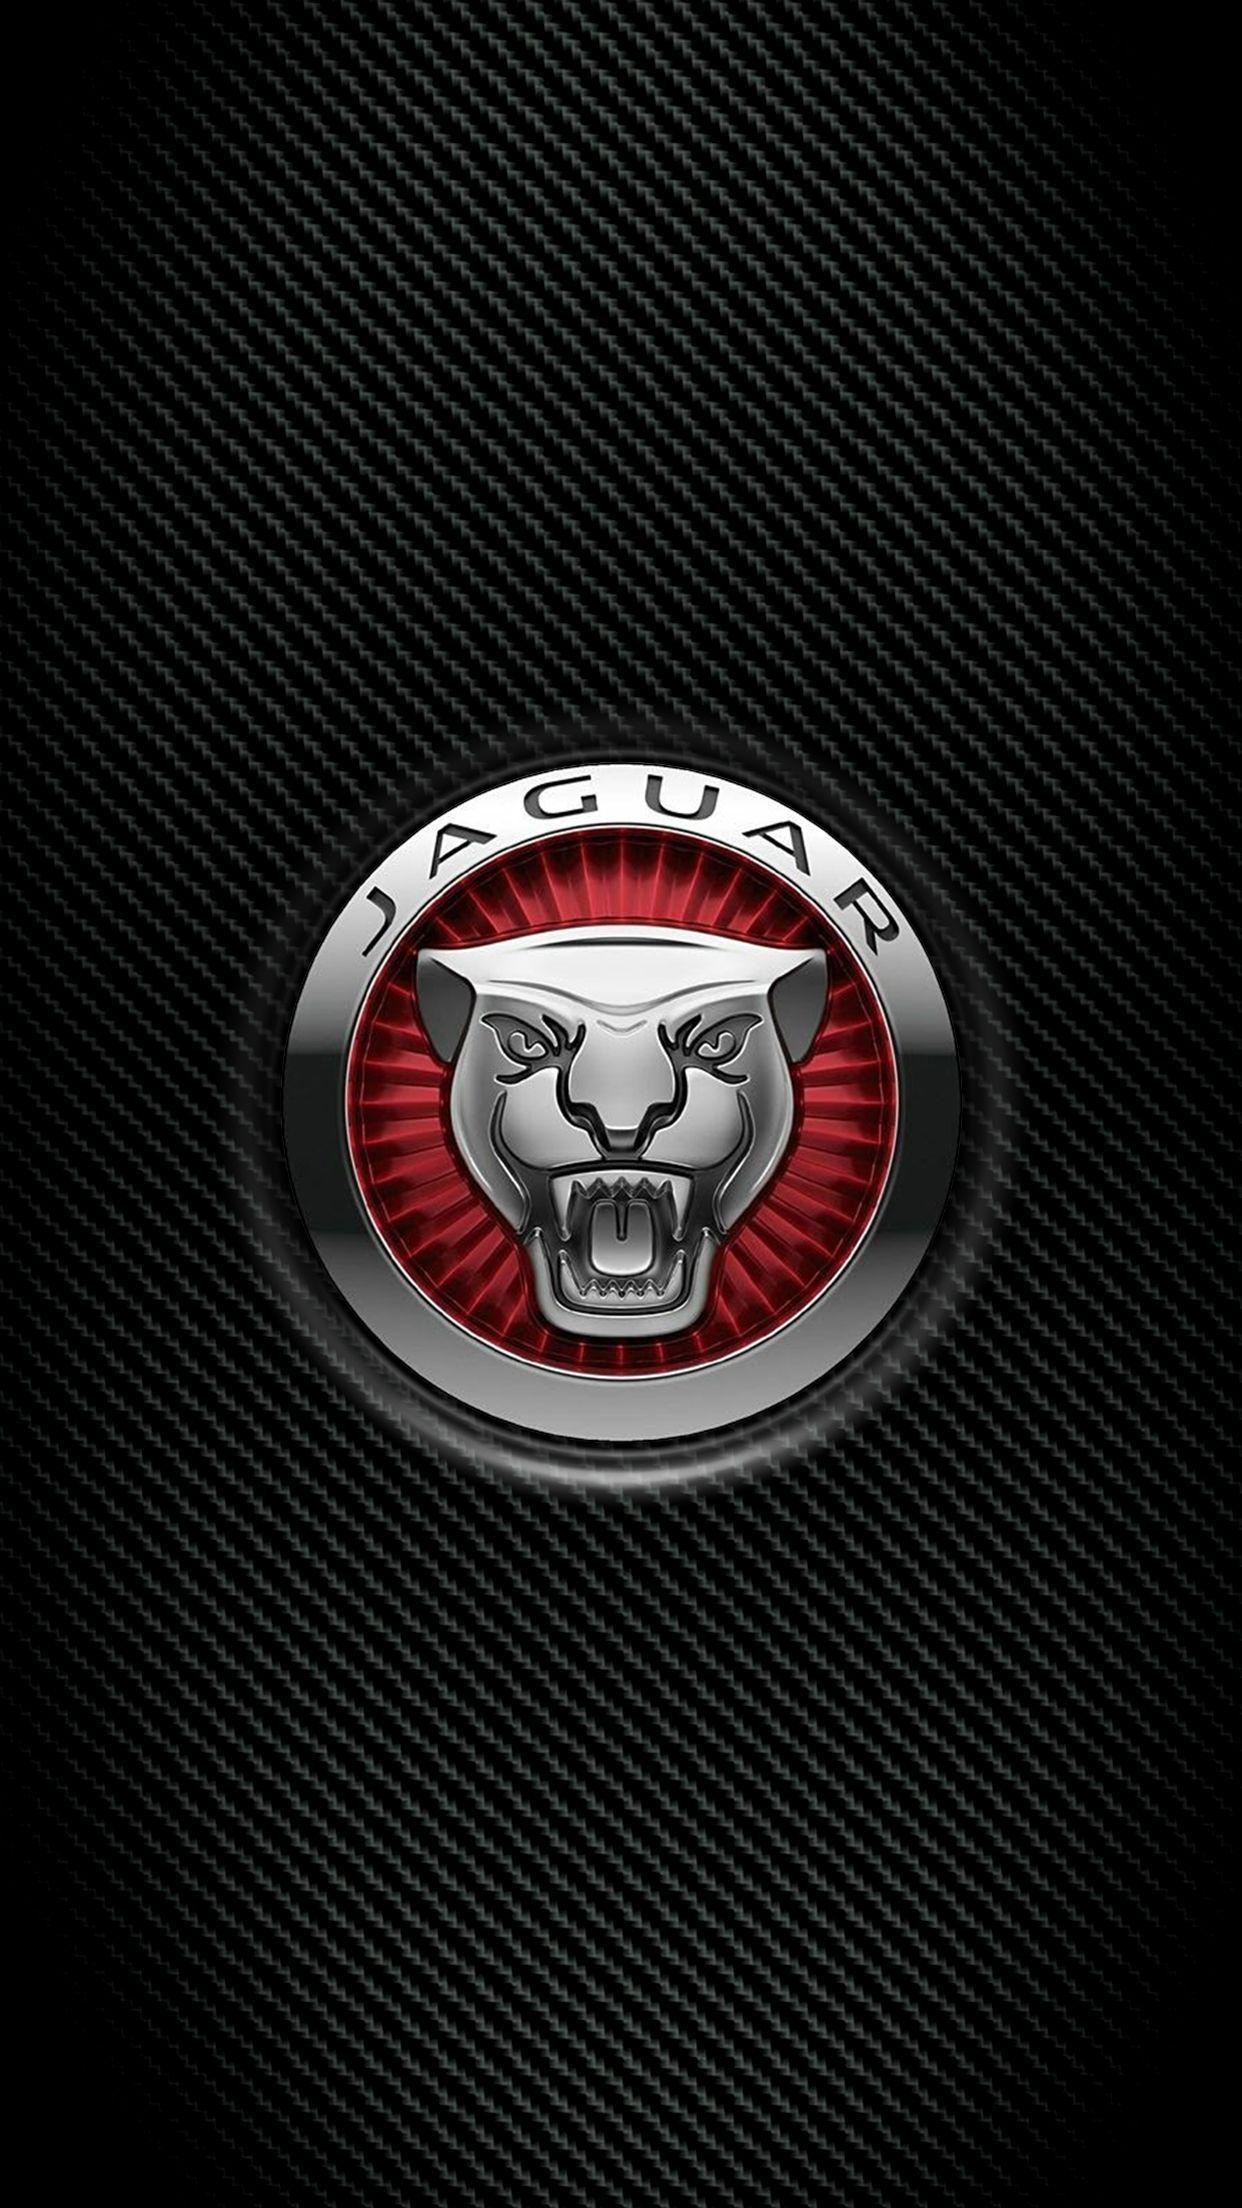 Jaguar Logo Wallpaper Screen Saver For Smartphone. Jaguar Land